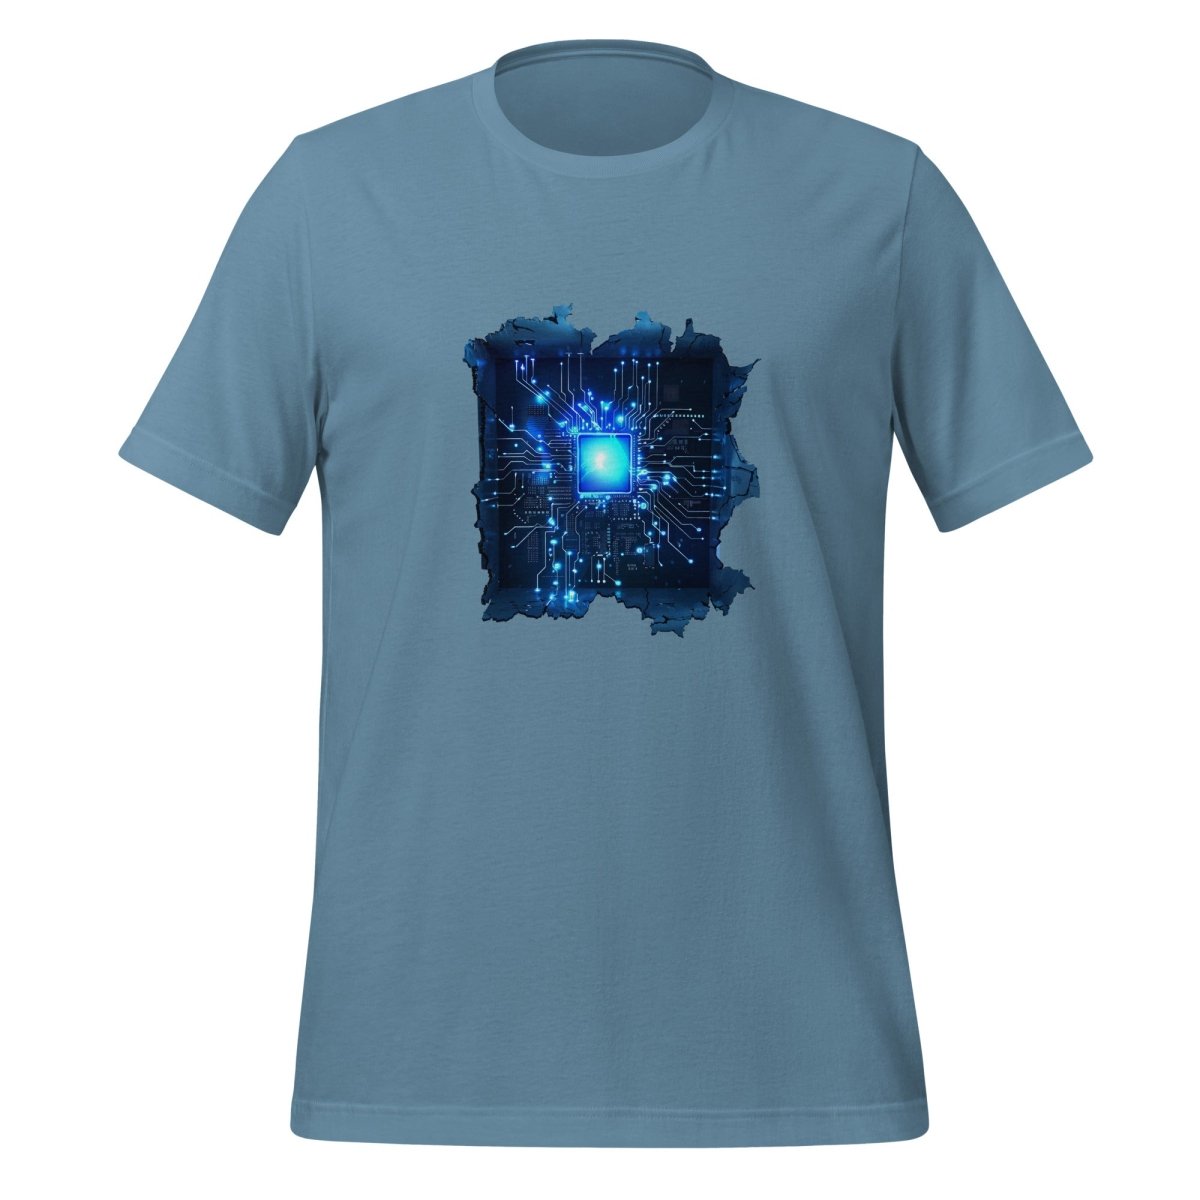 CPU Heart T - Shirt (unisex) - Steel Blue - AI Store